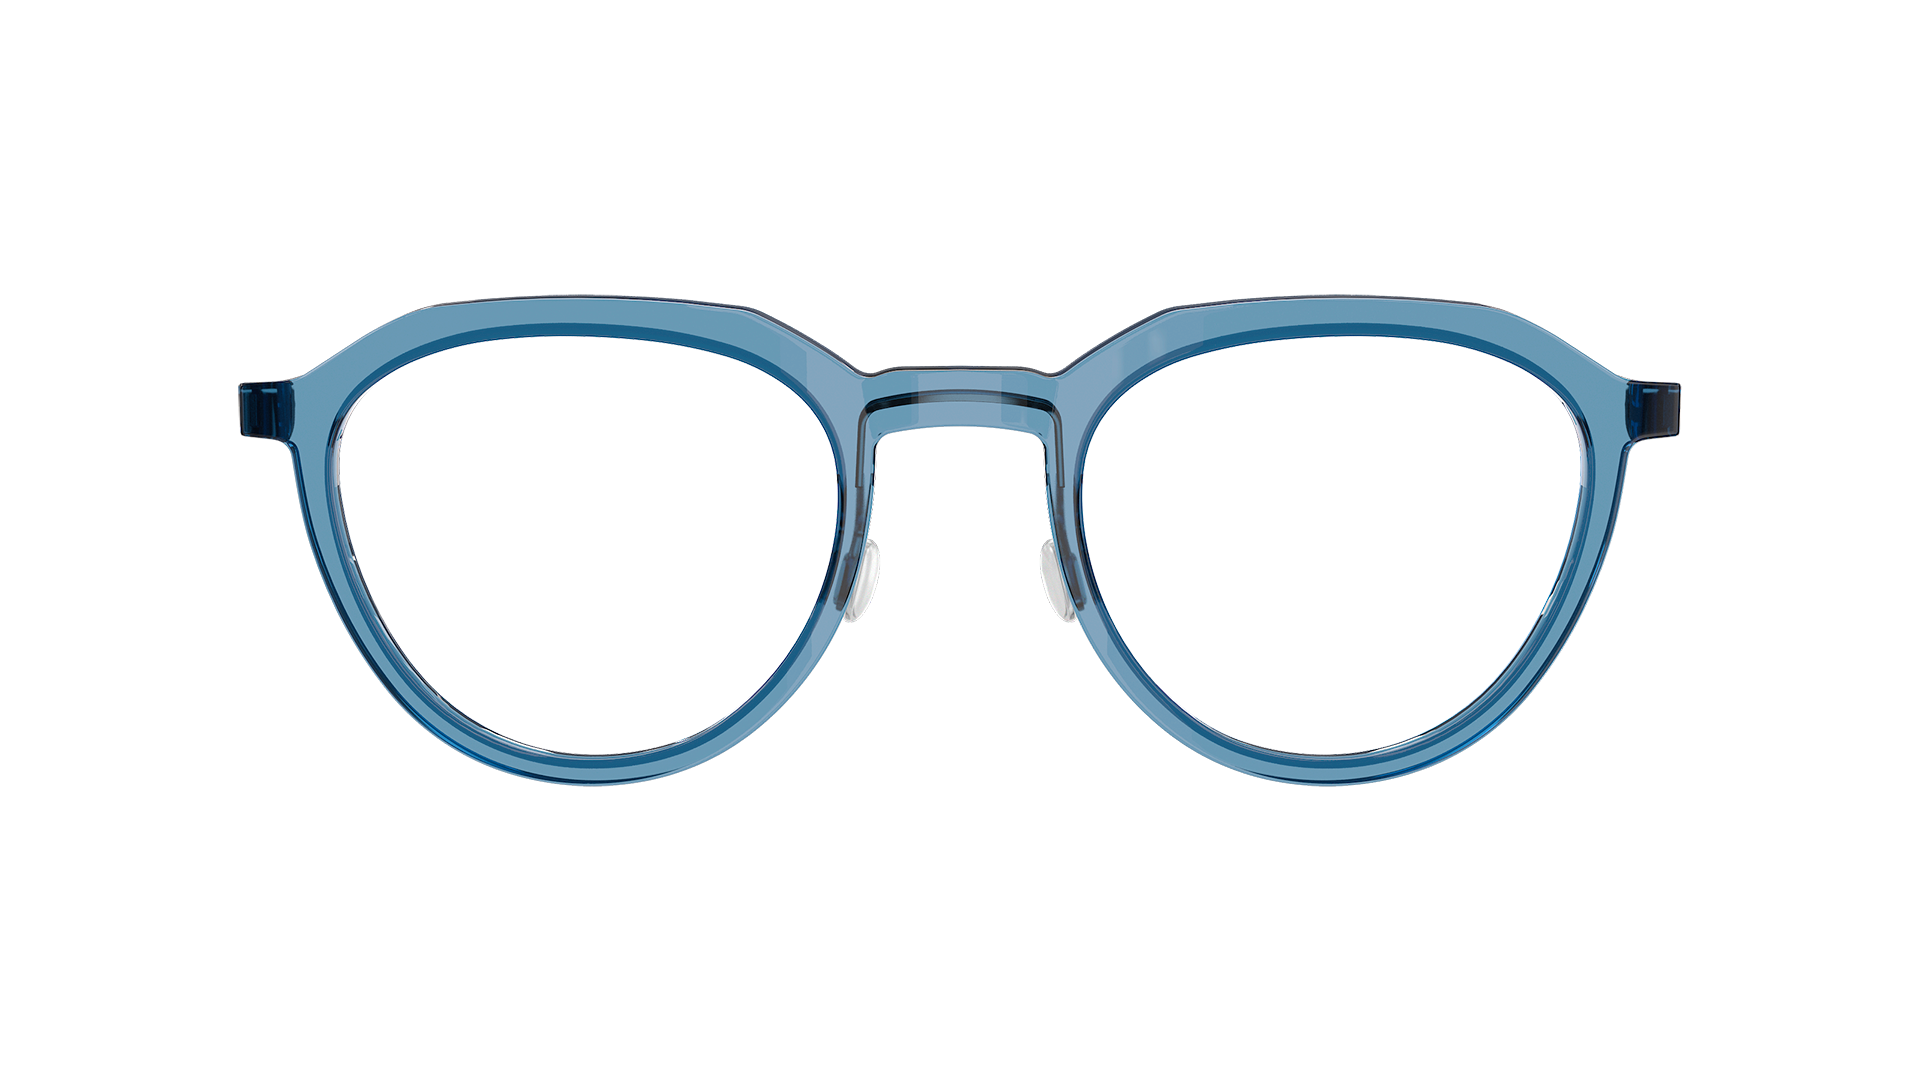 LINDBERG acetanium, Modell 1046 407, Brille mit Acetatfassung in Transparent-Blau und Titanbügeln